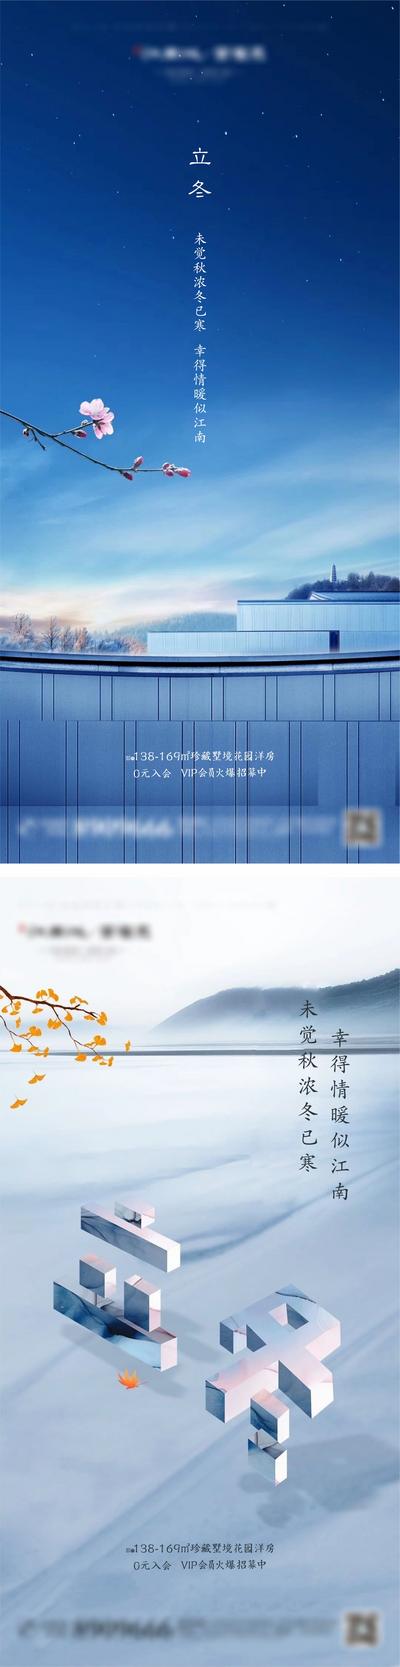 南门网 海报  房地产  系列   立冬   二十四节气    山水  梅花   立体字